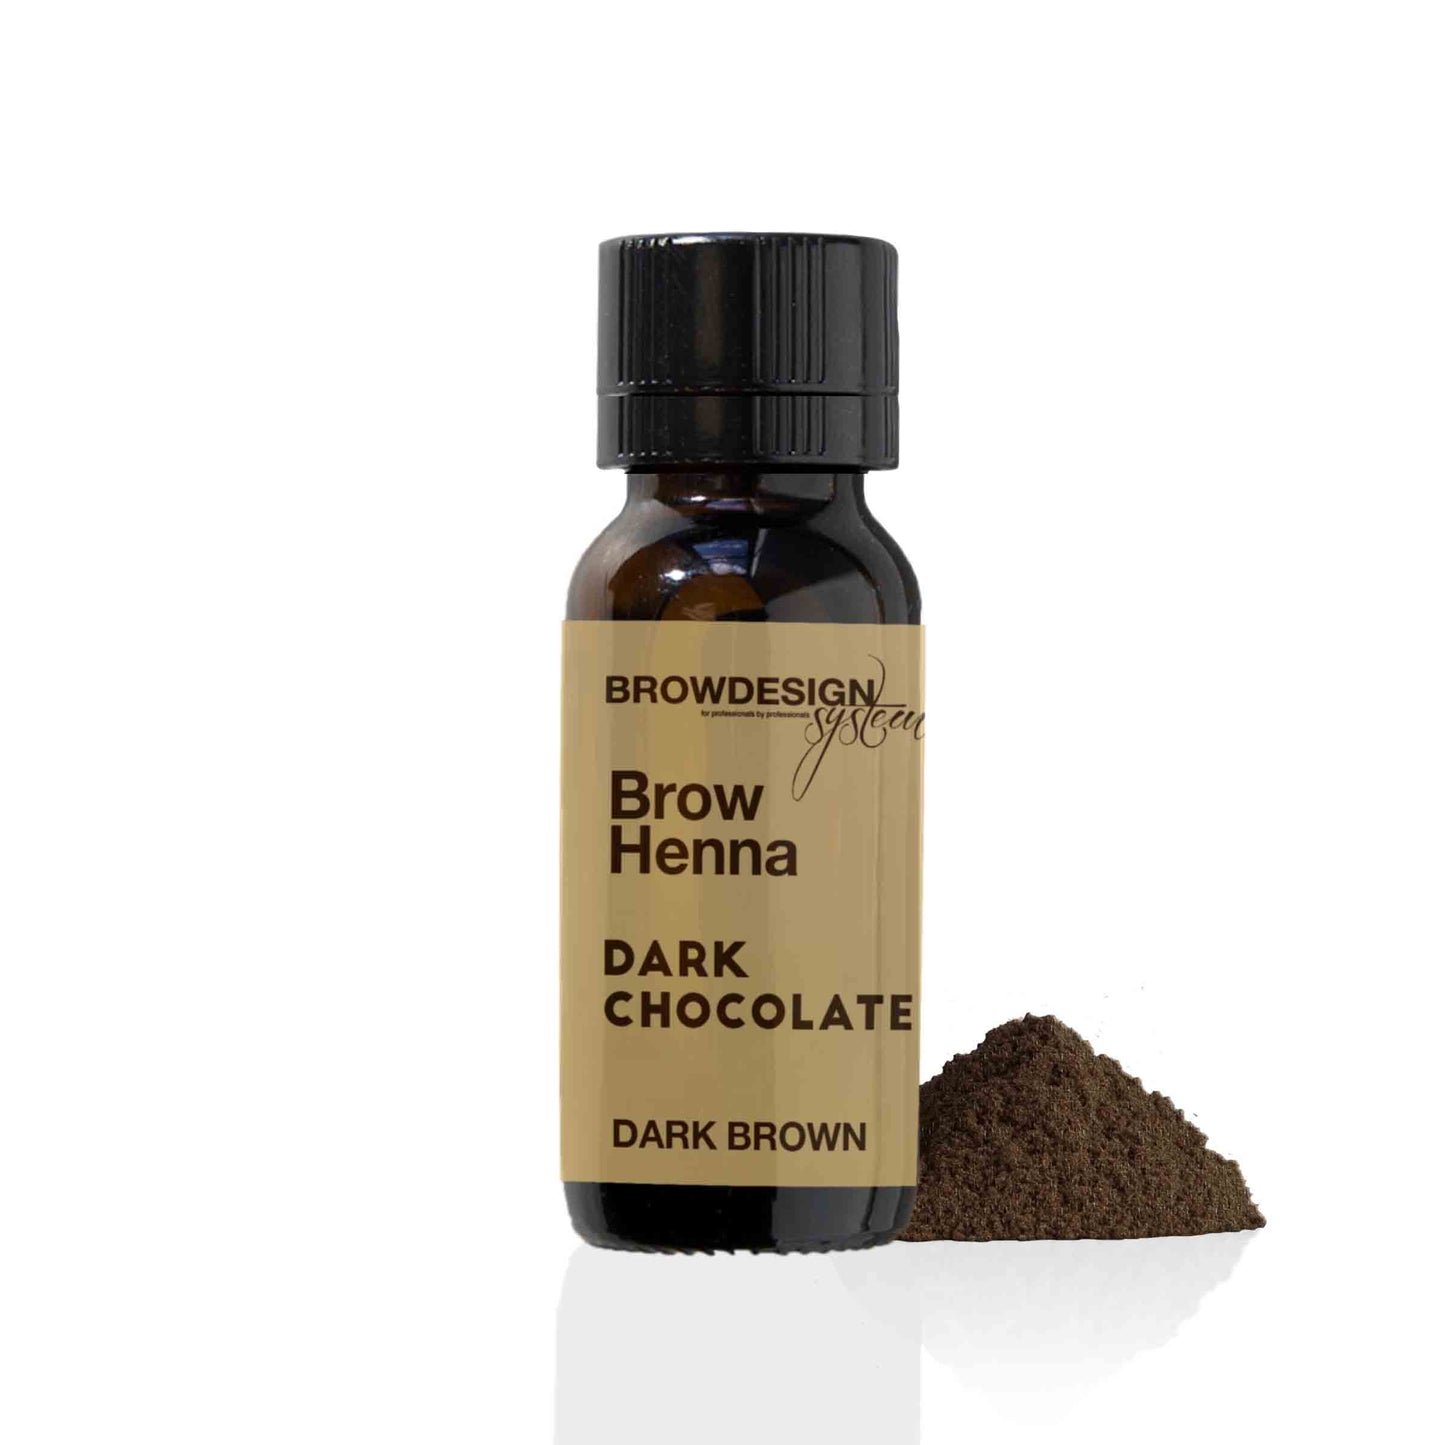 Brow Henna Dark Chocolate (Dark Brown)